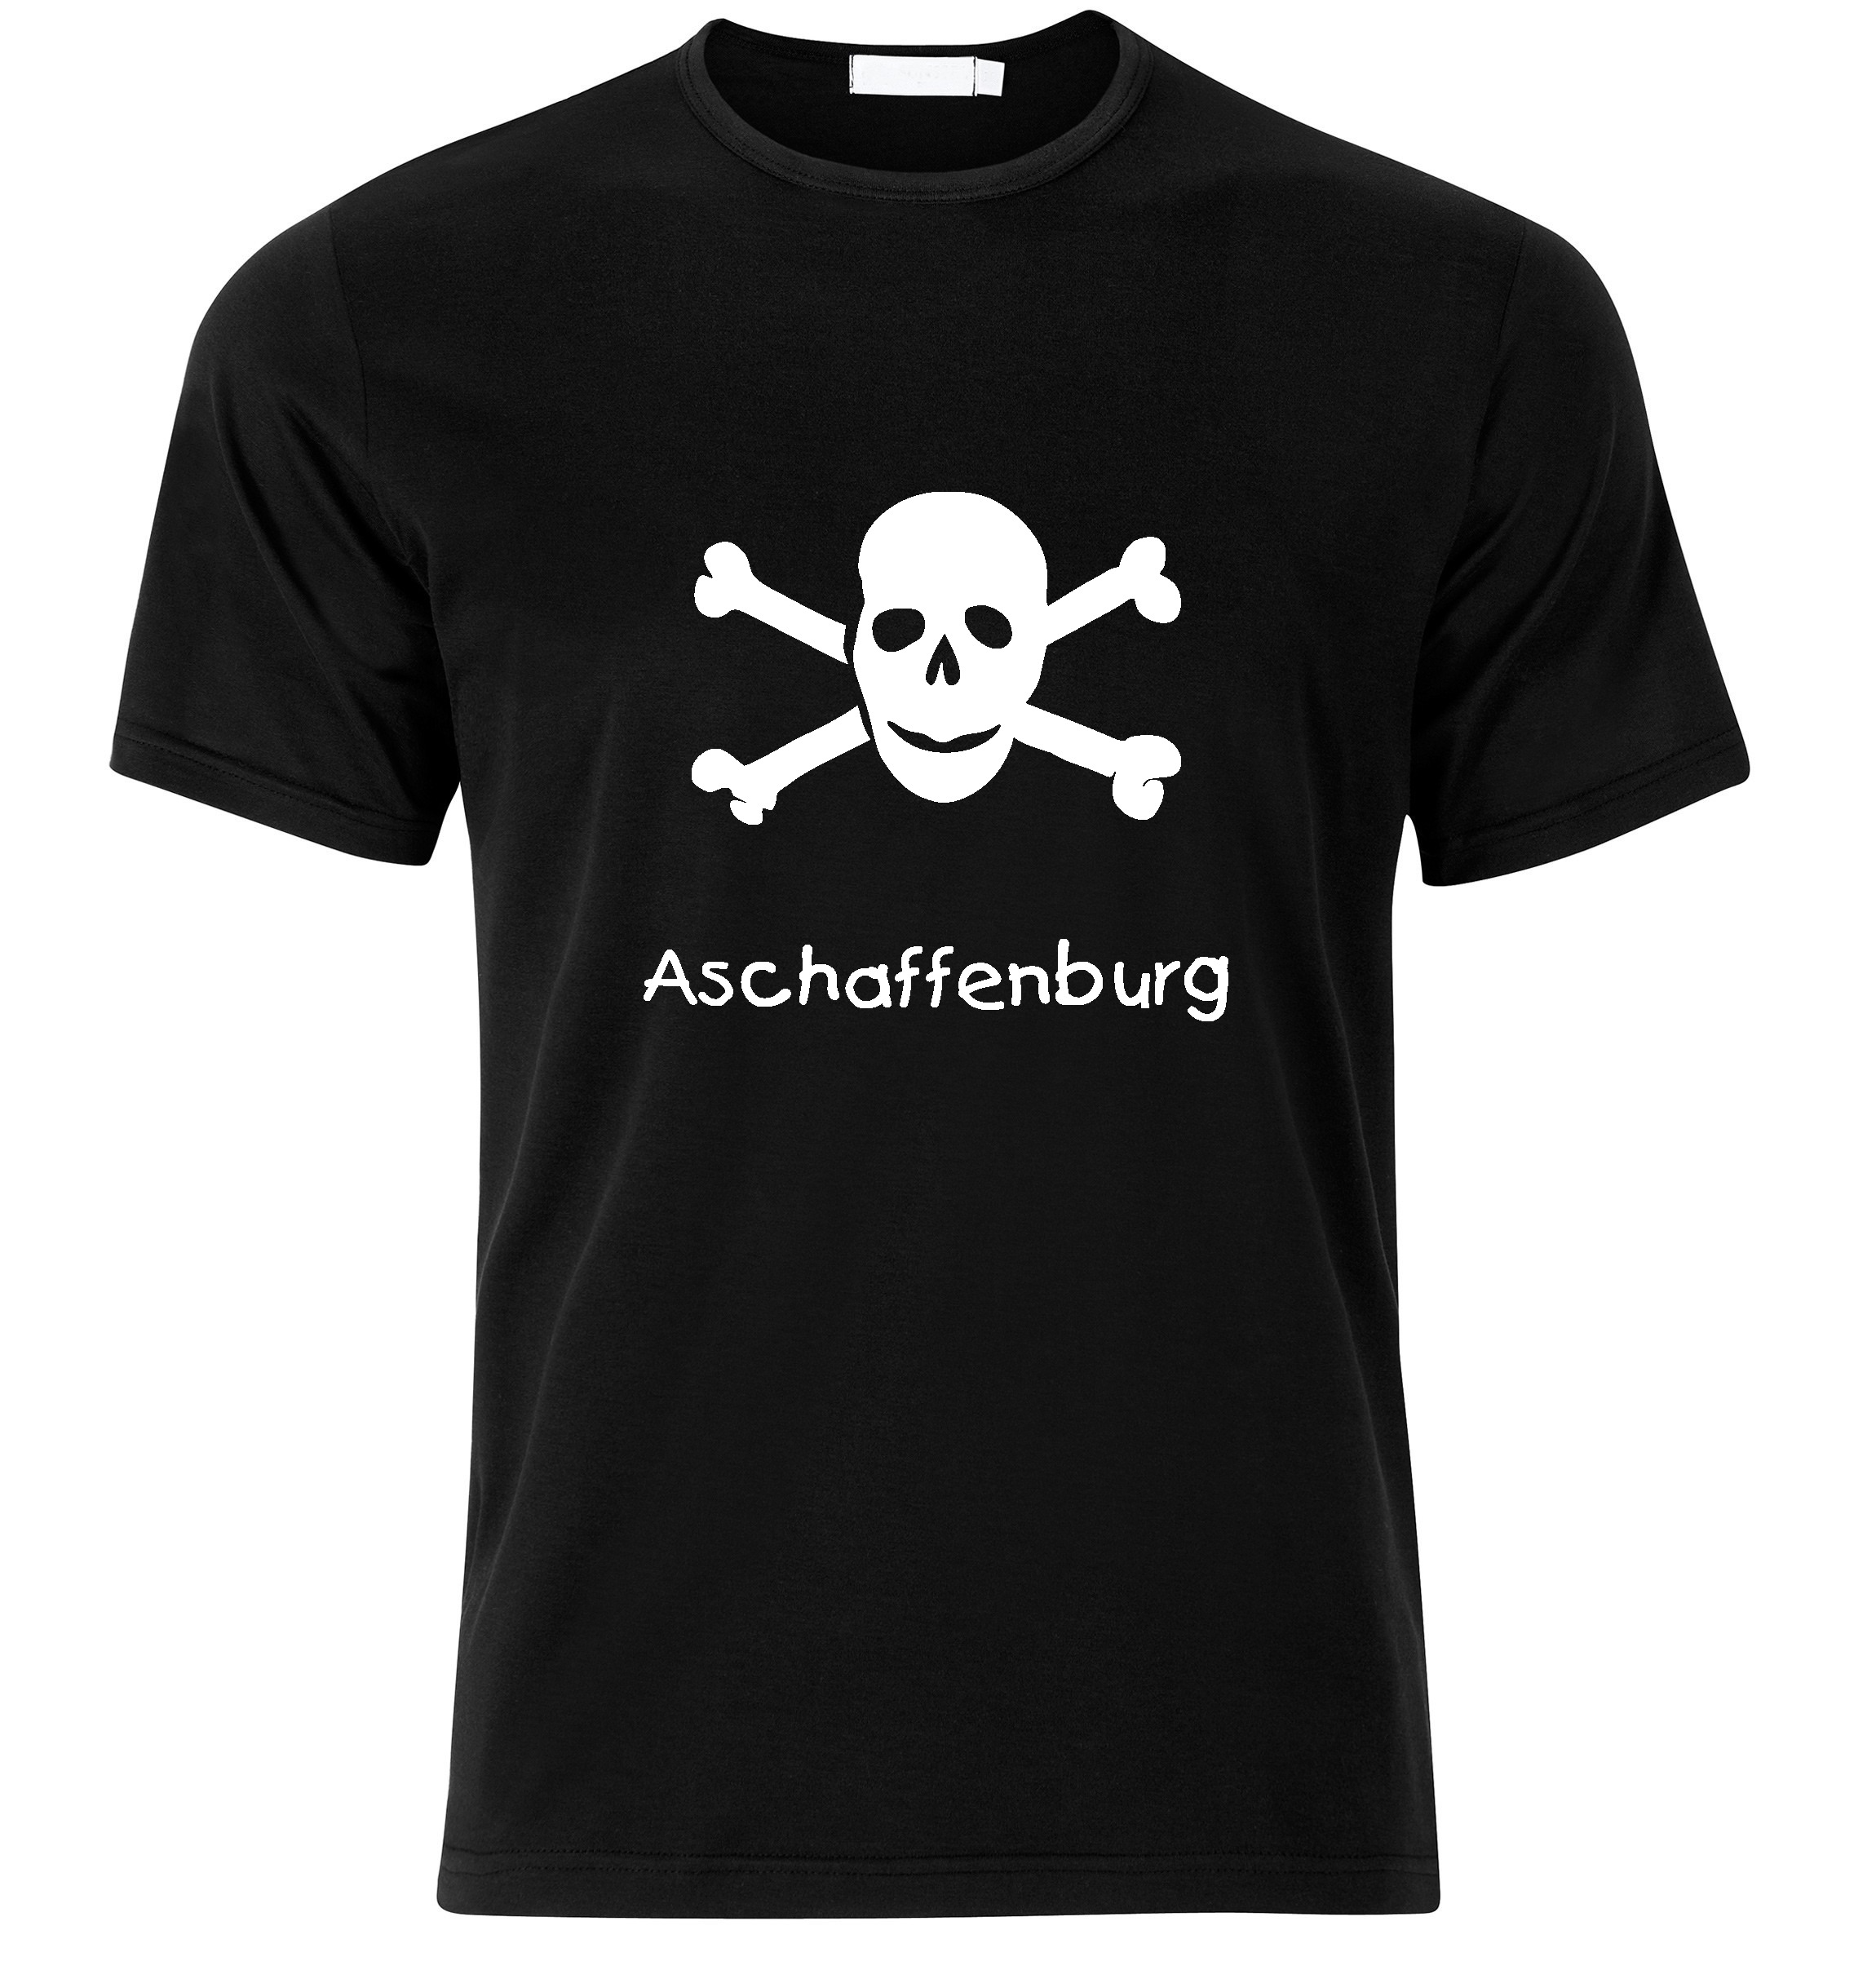 T-Shirt Aschaffenburg Jolly Roger, Totenkopf